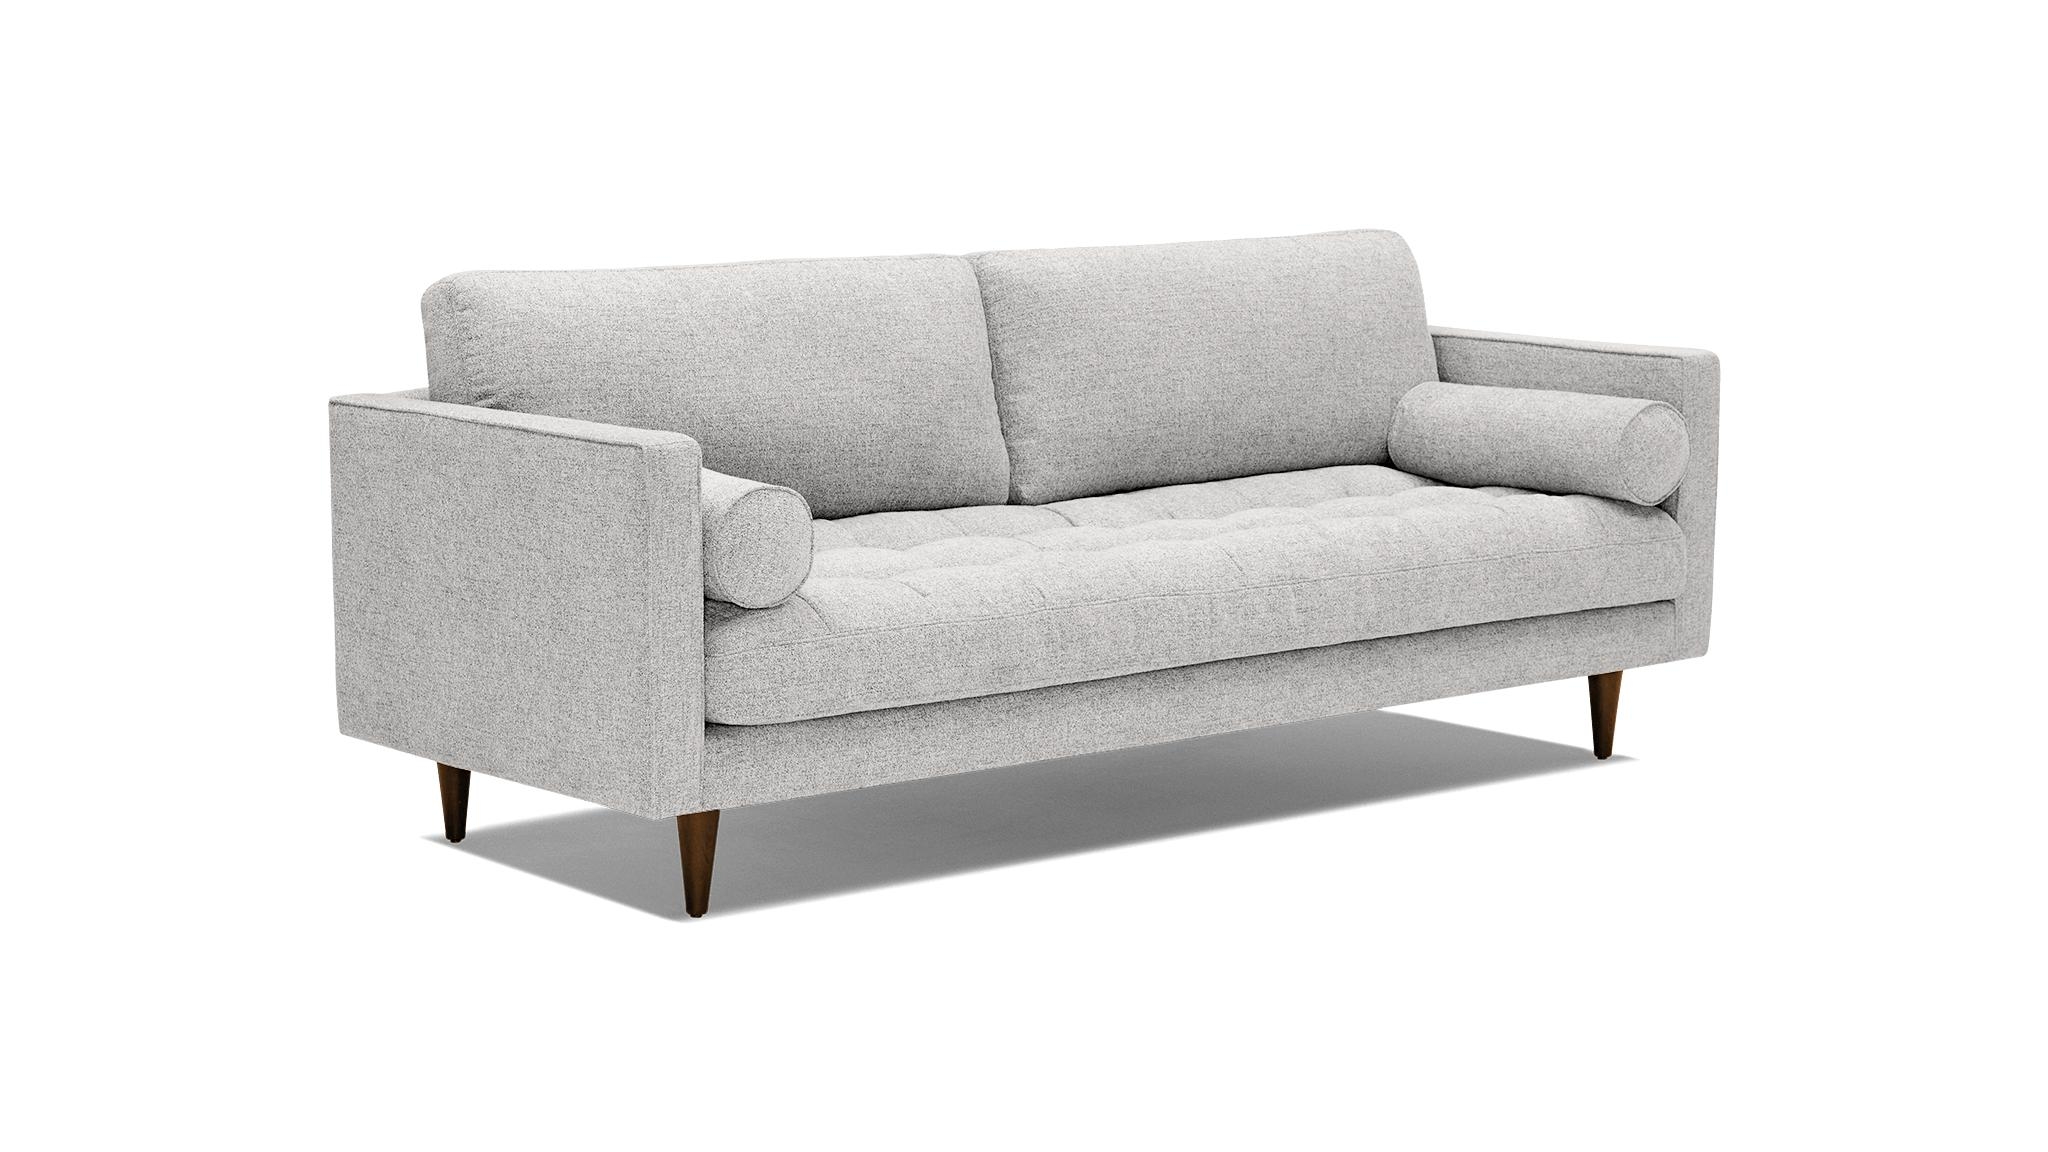 Gray Briar Mid Century Modern Sofa - Sunbrella Premier Fog - Mocha - Image 1